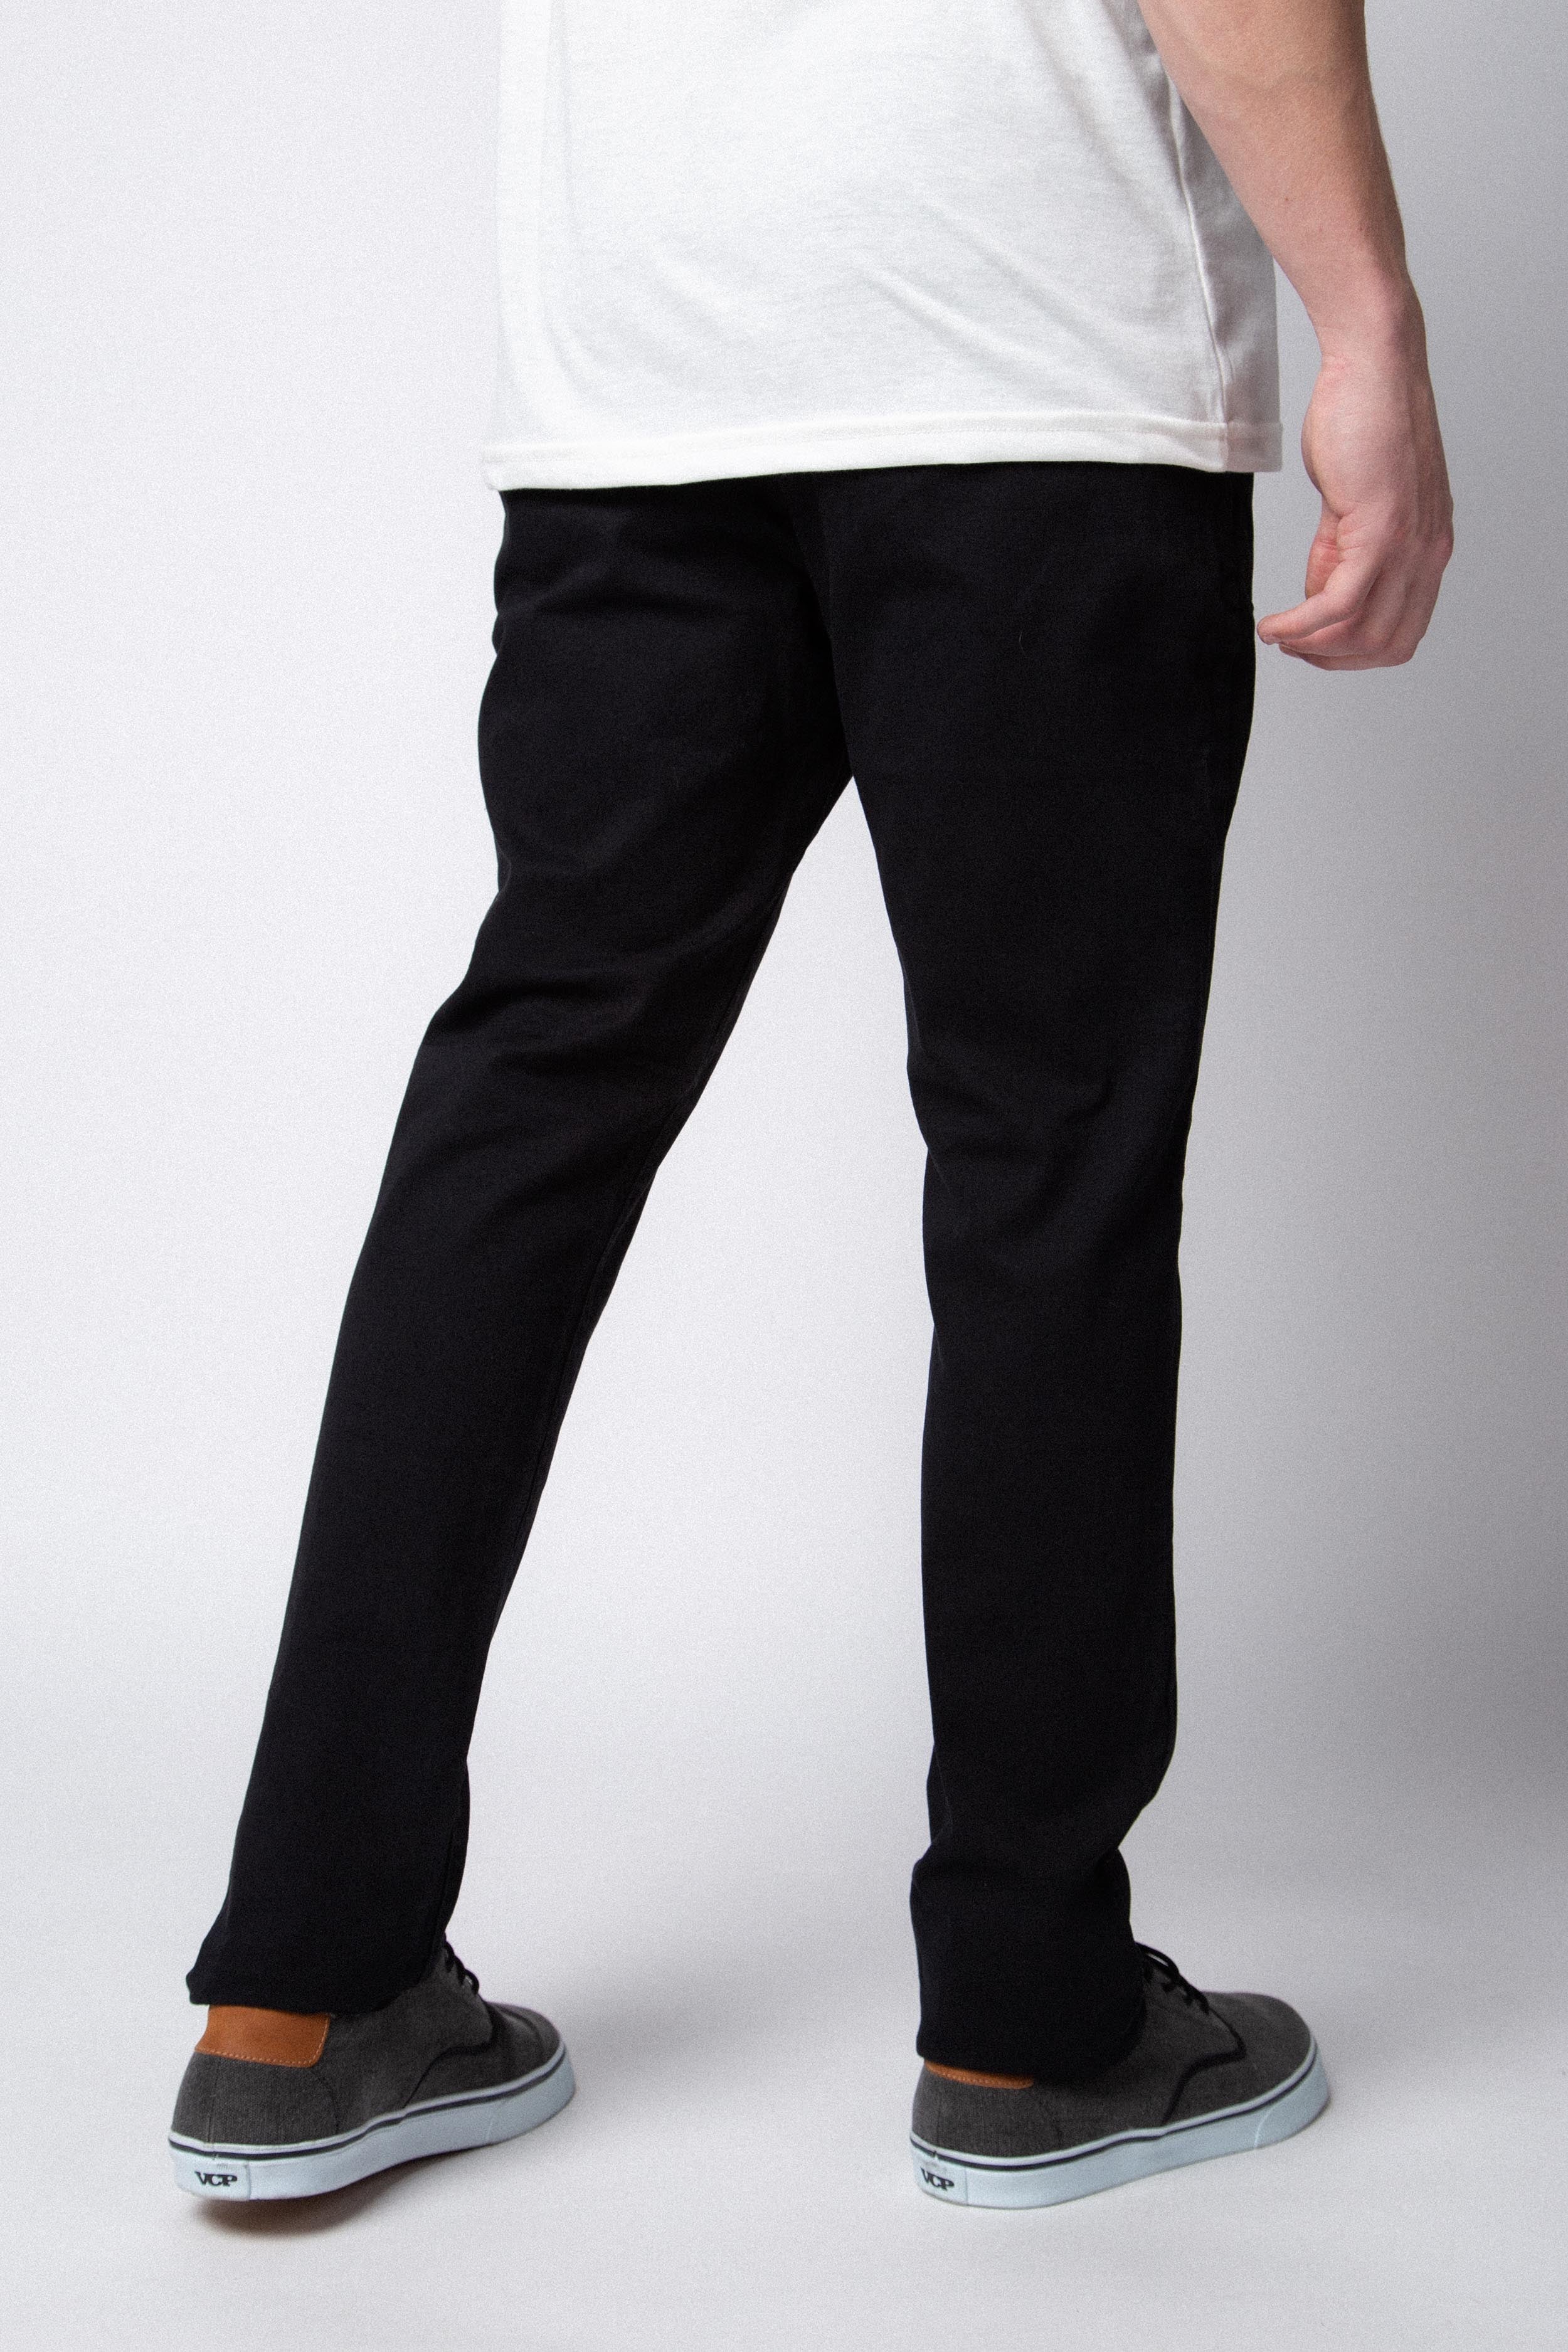 Pantalon Chino Royal Negro